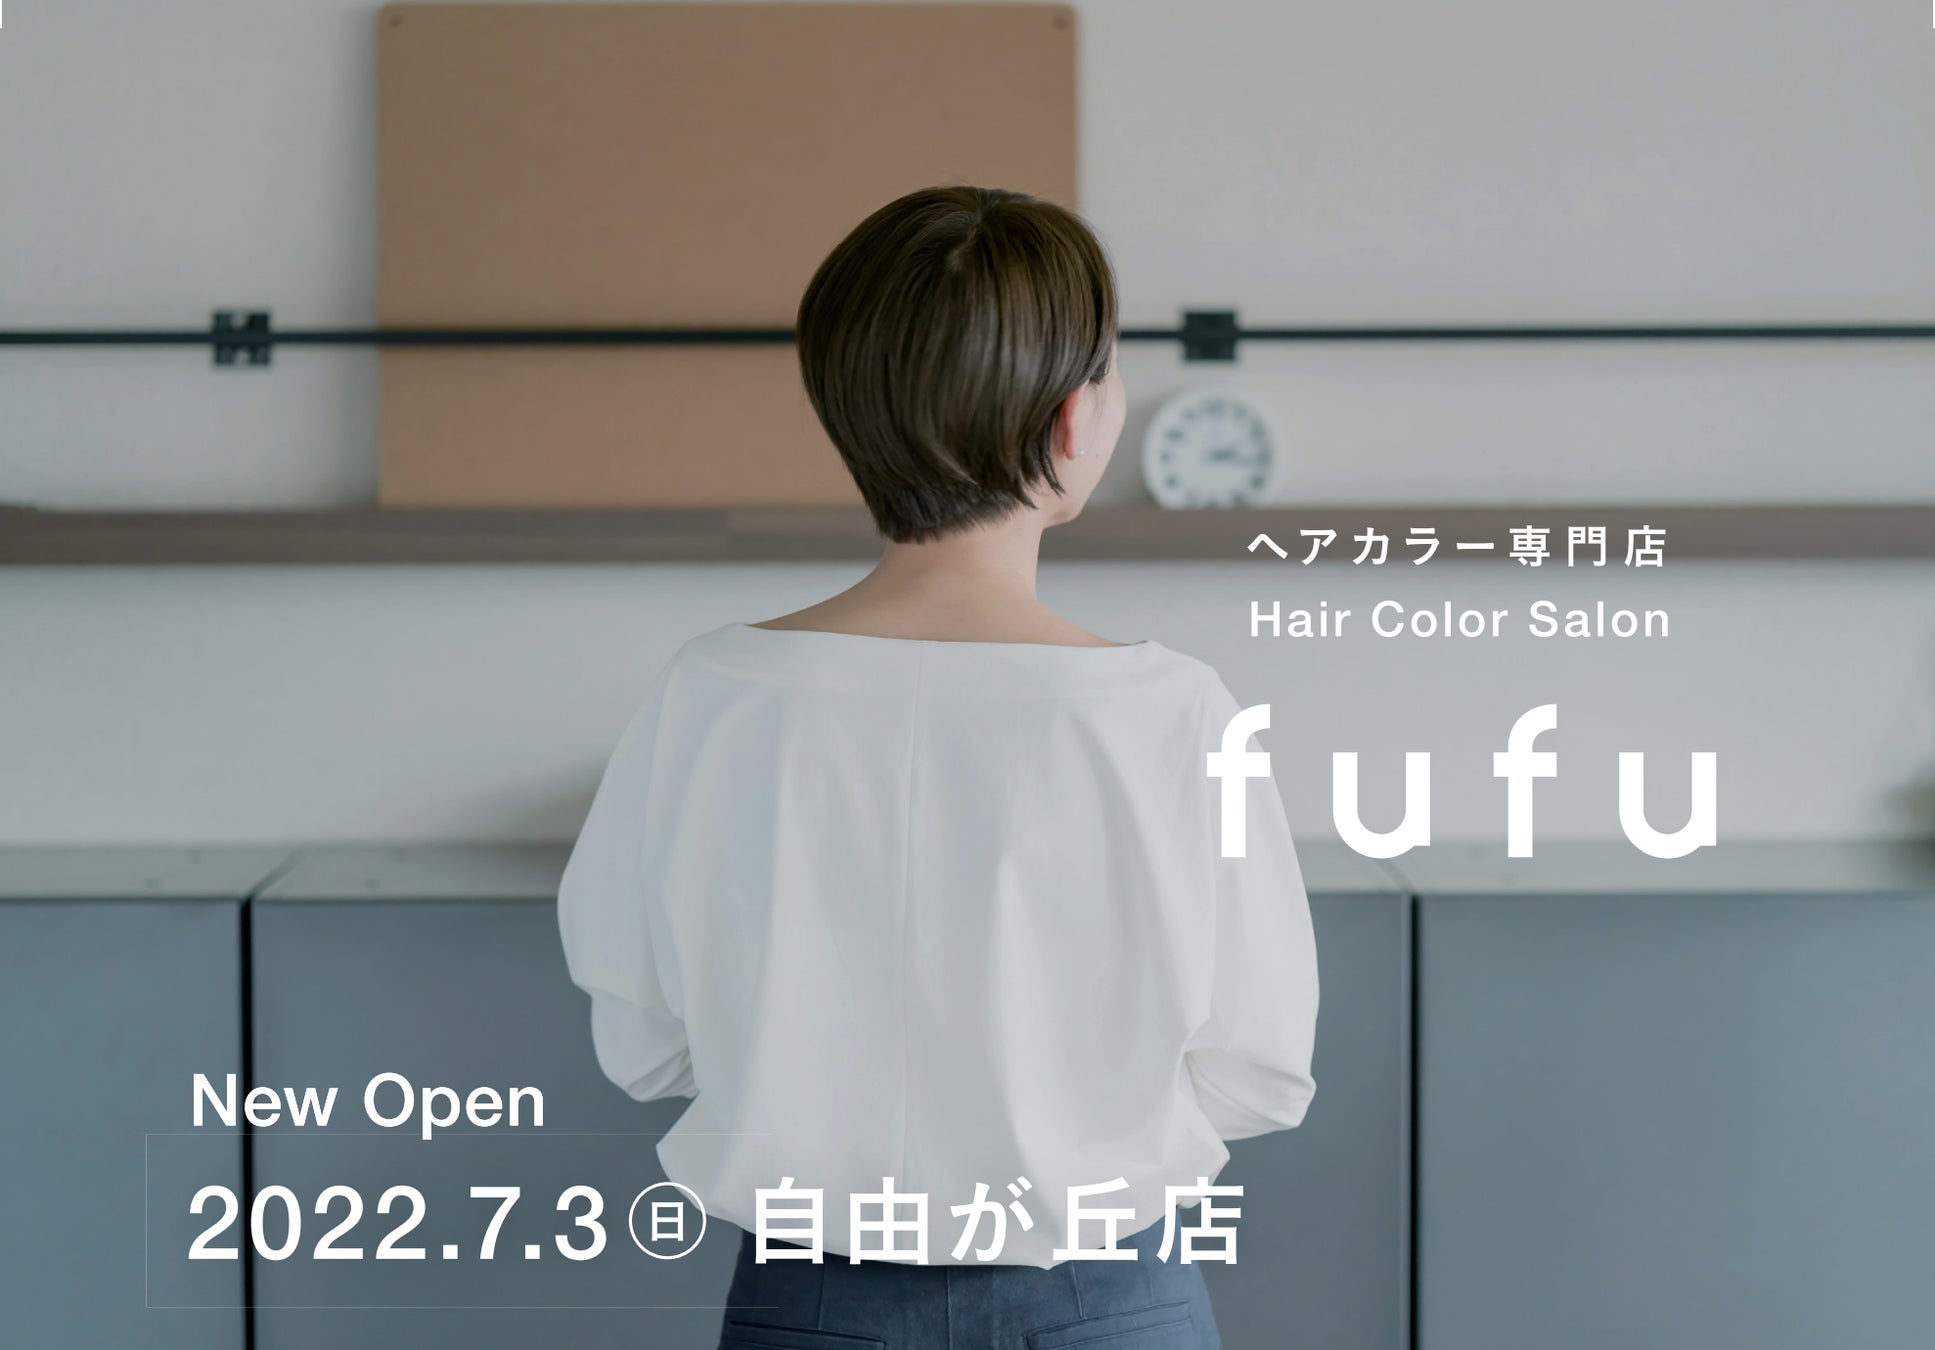 新fufu誕生。fufuブランドのサービス価値を強化し、より一層選ばれるブランドへ。新ロゴ&店舗デザインで装い新たに自由が丘店より新店舗を続々OPEN!